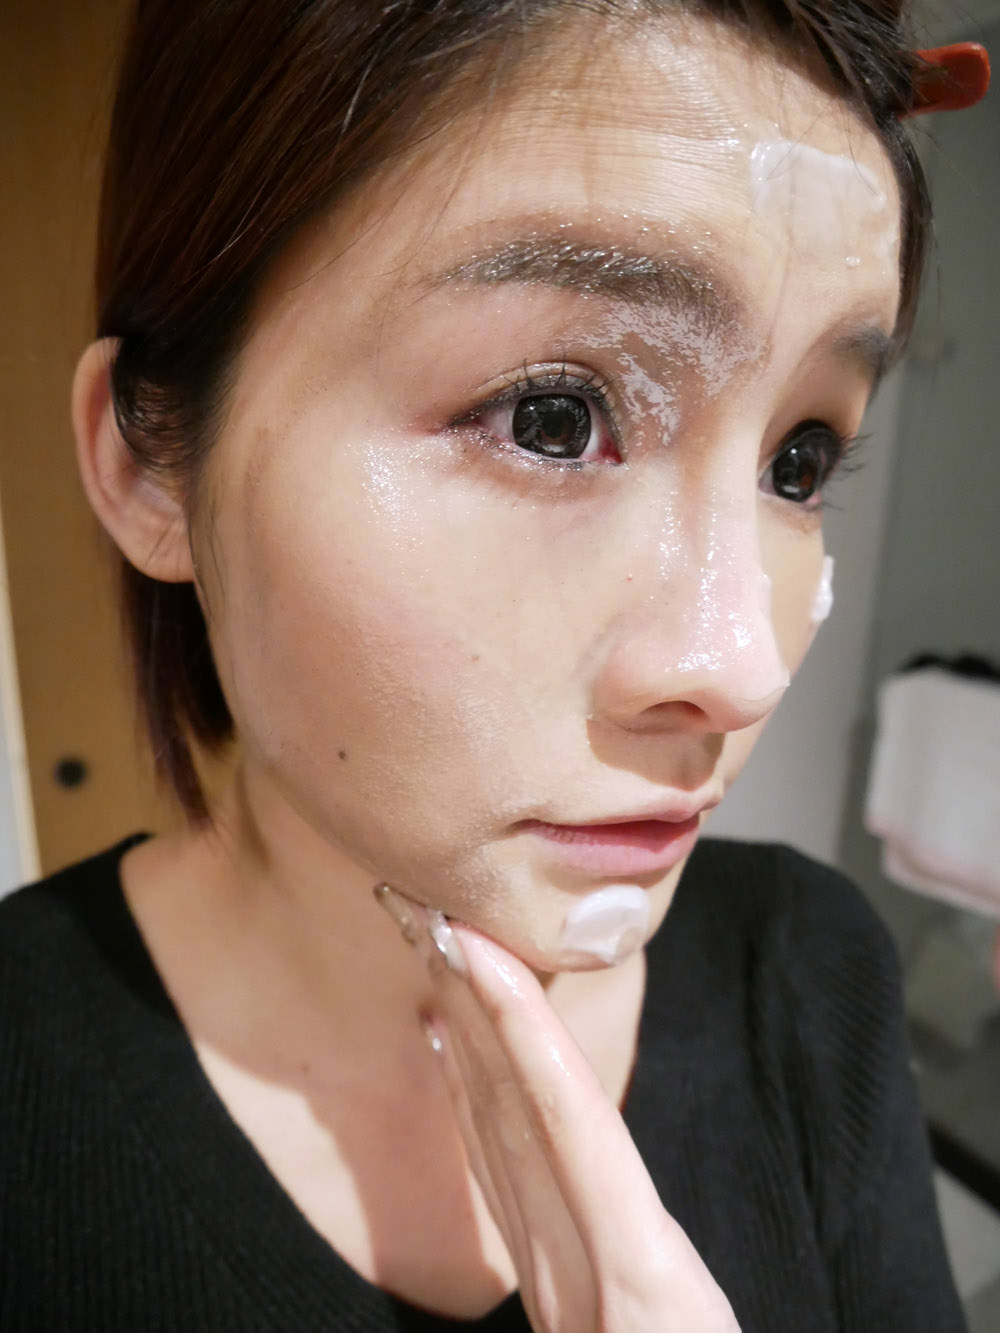 [啾團] 日本STAR OF THE COLOR零負擔溫和卸妝霜連好萊塢彩妝師們都大推的卸妝品.讓卸妝快速又舒服